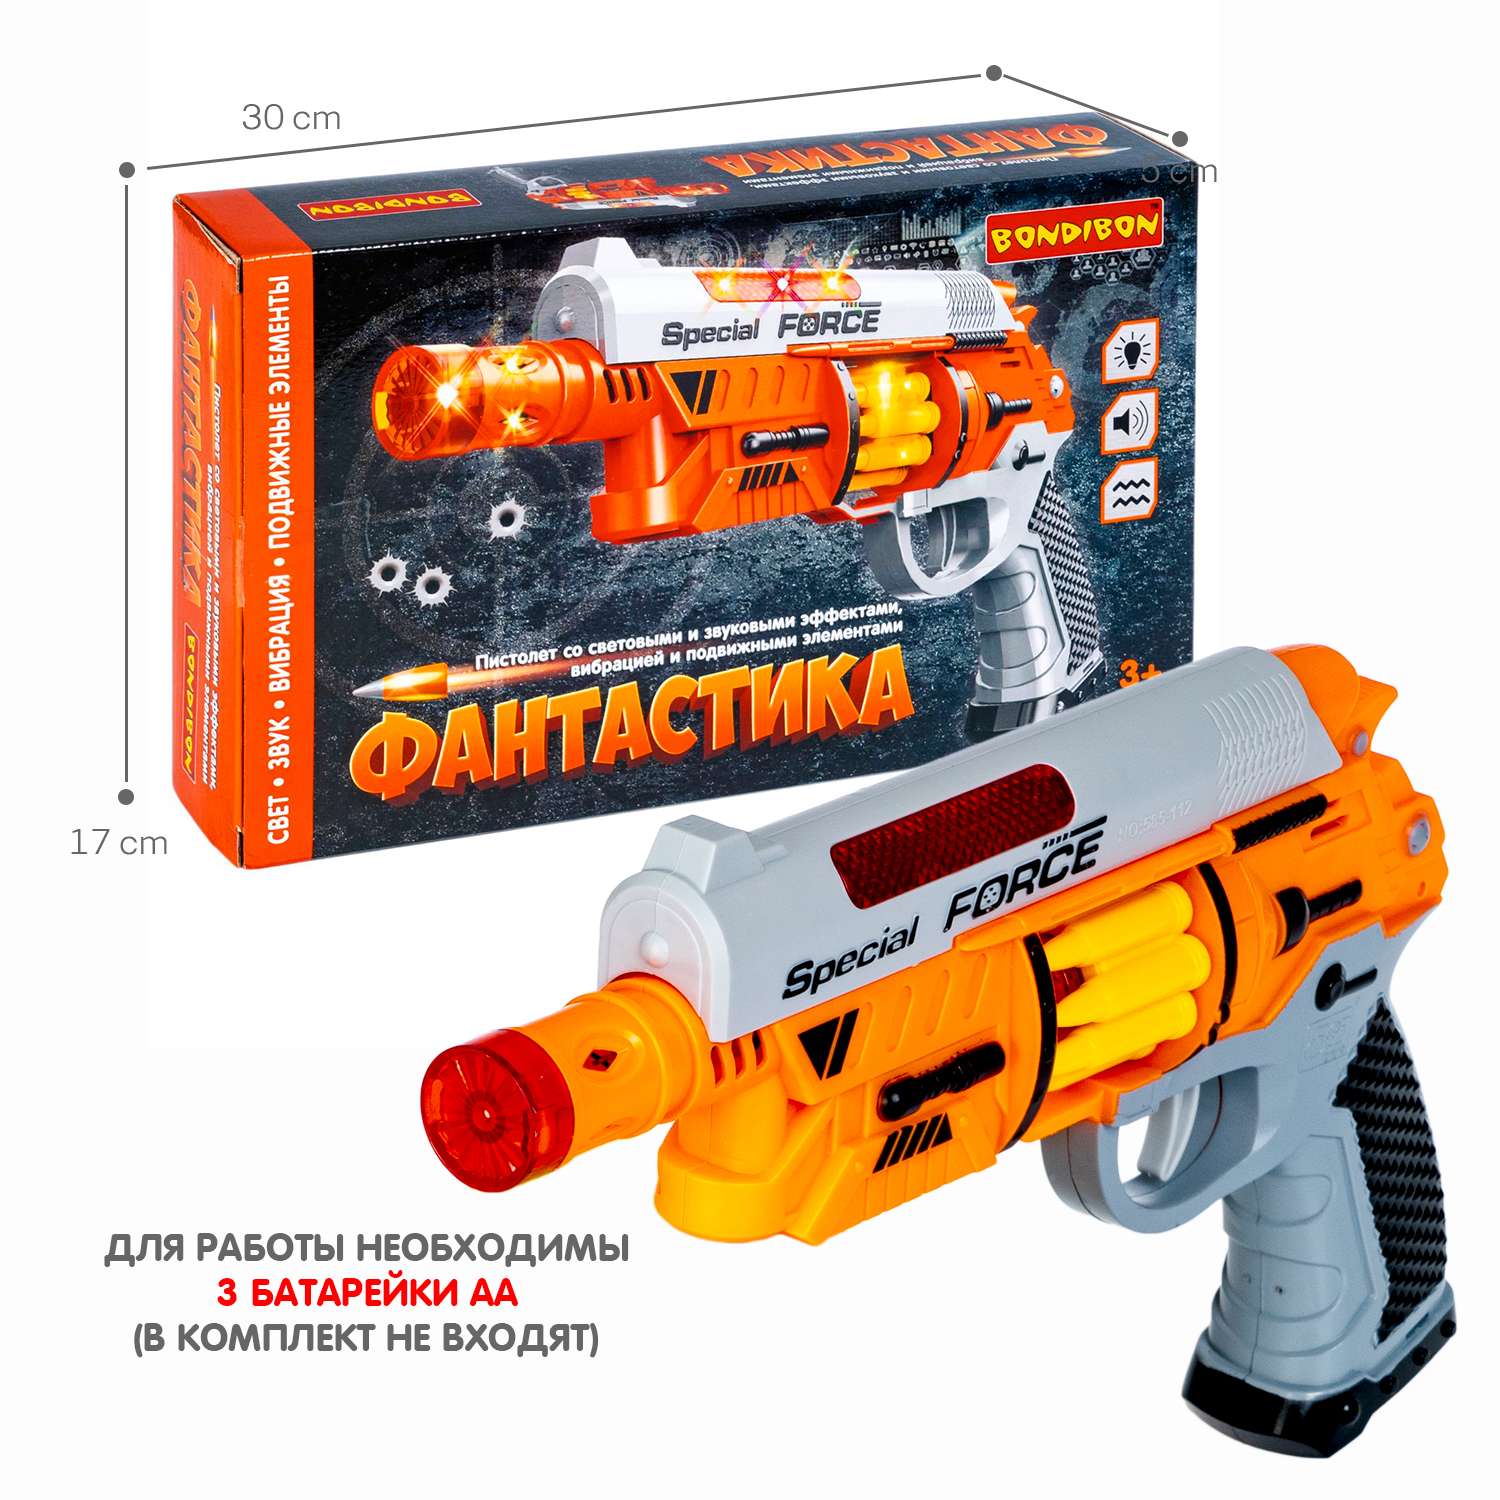 Пистолет BONDIBON Фантастика со свето-звуковым эффектом и подвижными элементами серебристо-оранжевого цвета - фото 6